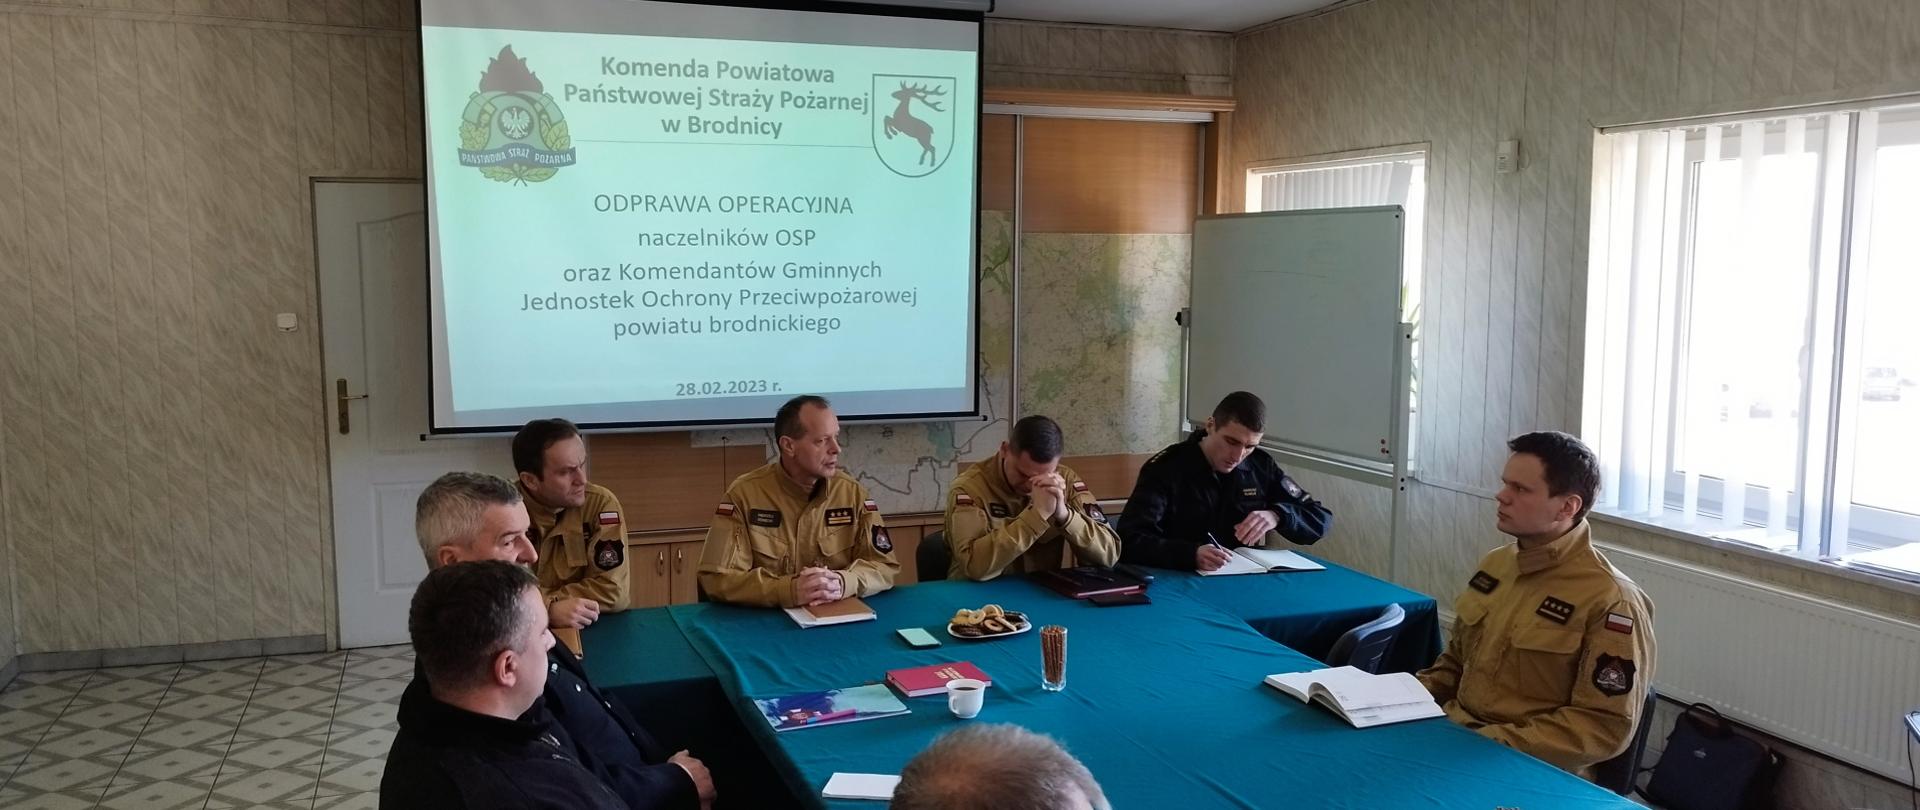 Zdjęcie przedstawia funkcjonariuszy PSP w Brodnicy oraz druhów OSP siedzących przy stole podczas narady. W tle prezentacja wyświetlana na ekranie.